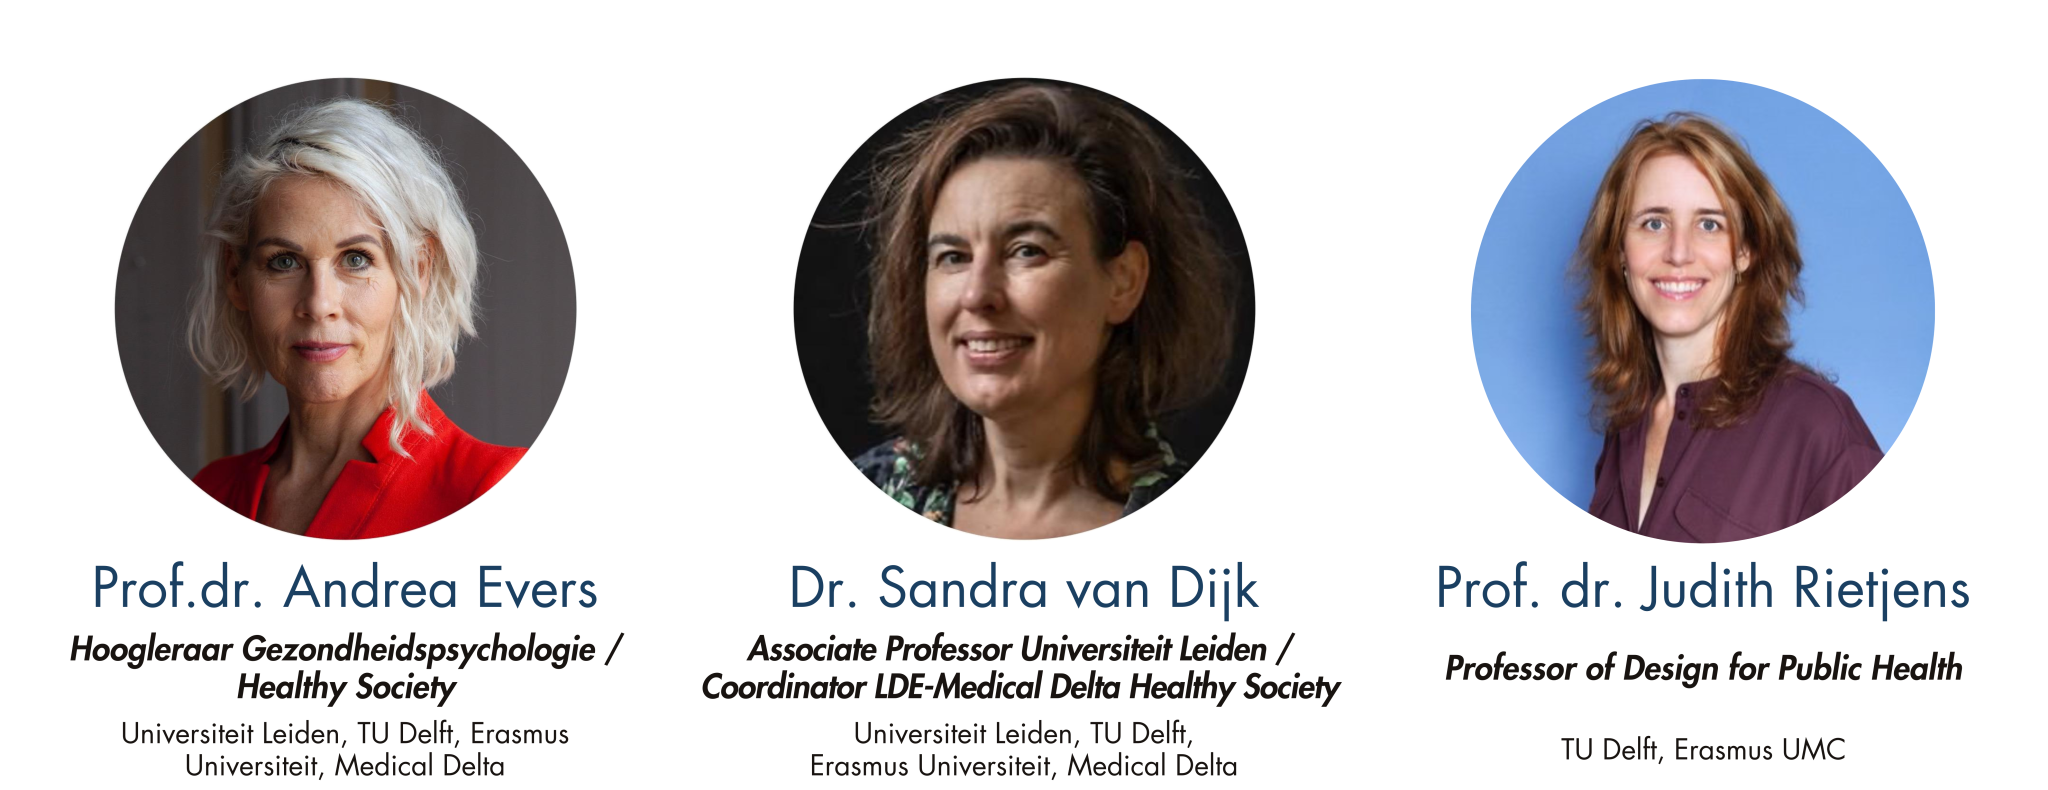 Dagelijks bestuur: Prof.dr. Andrea Evers, Dr. Sandra van Dijk, Prof.dr. Judith Rietjens